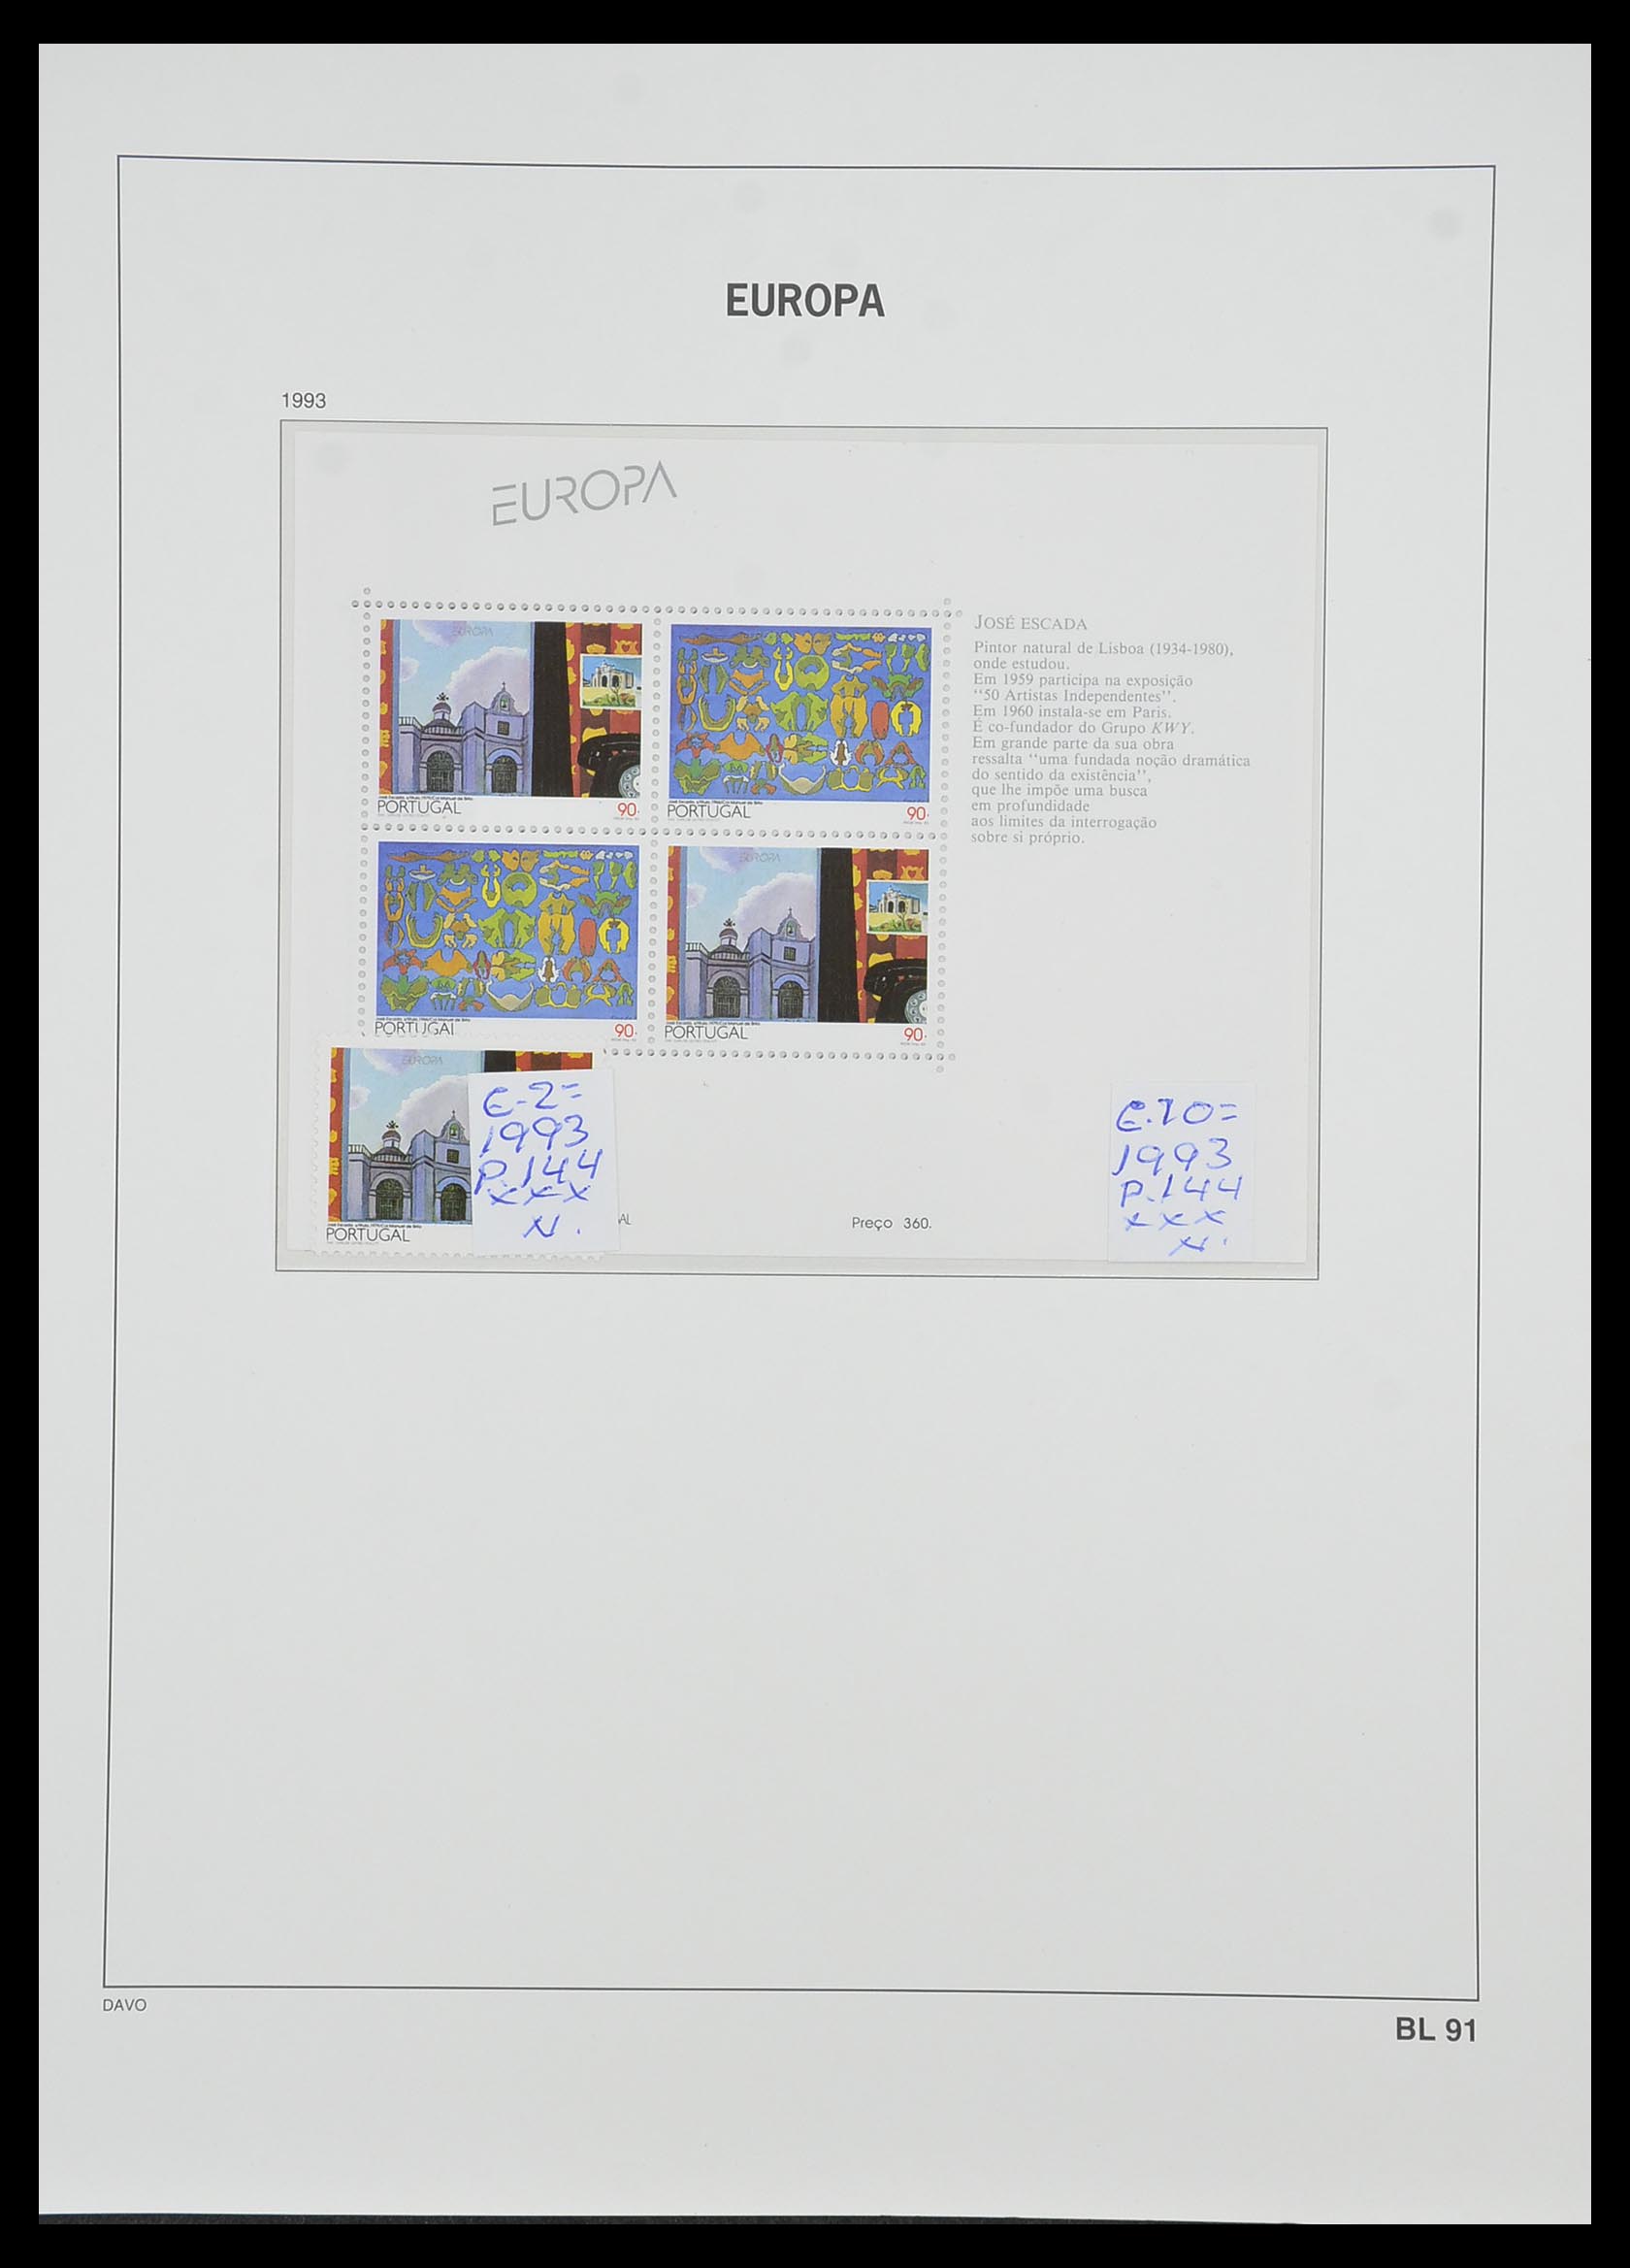 33985 077 - Stamp collection 33985 Europa CEPT souvenir sheets 1974-2014.